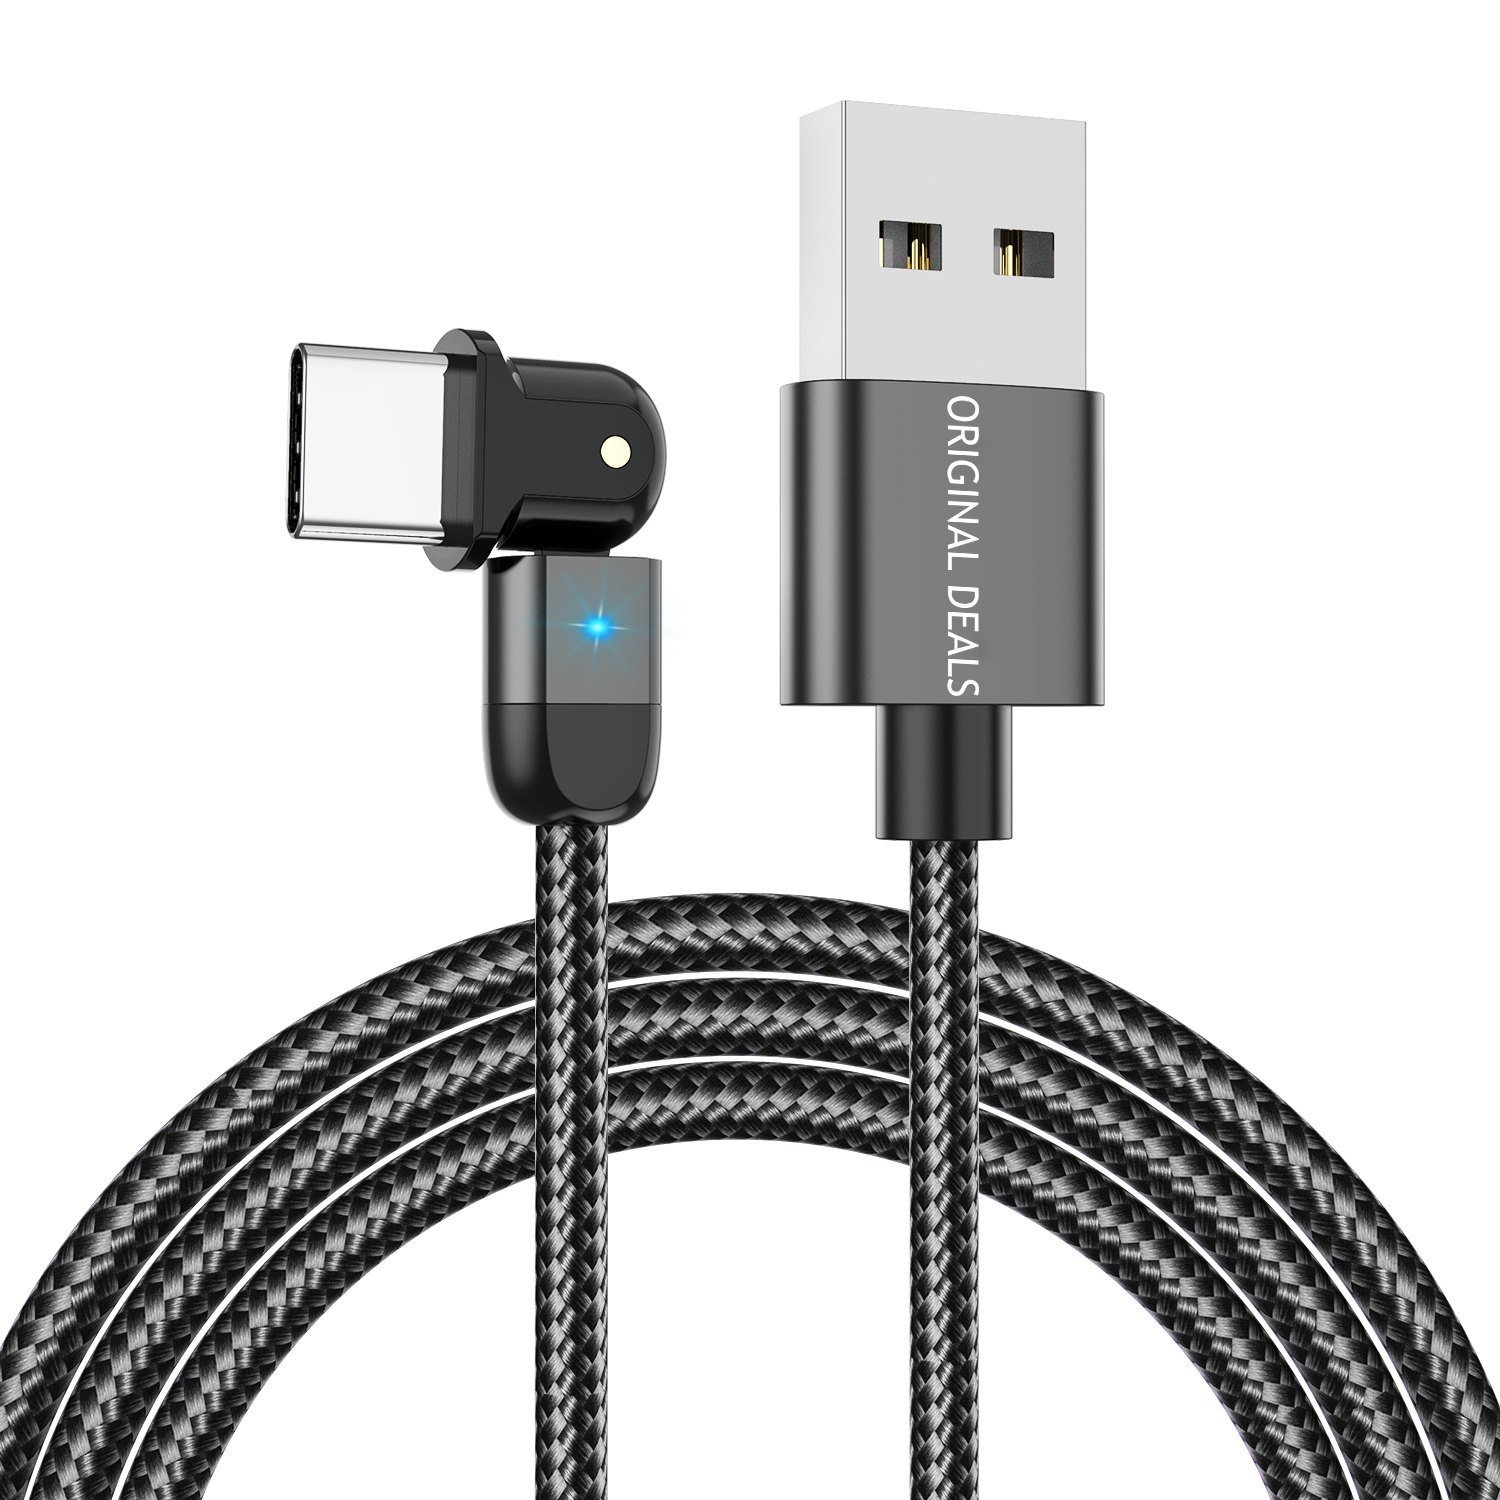 Cablu USB pentru Incarcare Telefon cu Mufa tip C, cu Incarcare Rapida Fast Charge, Material si Calitate Premium, Negru, 200cm, Original Deals